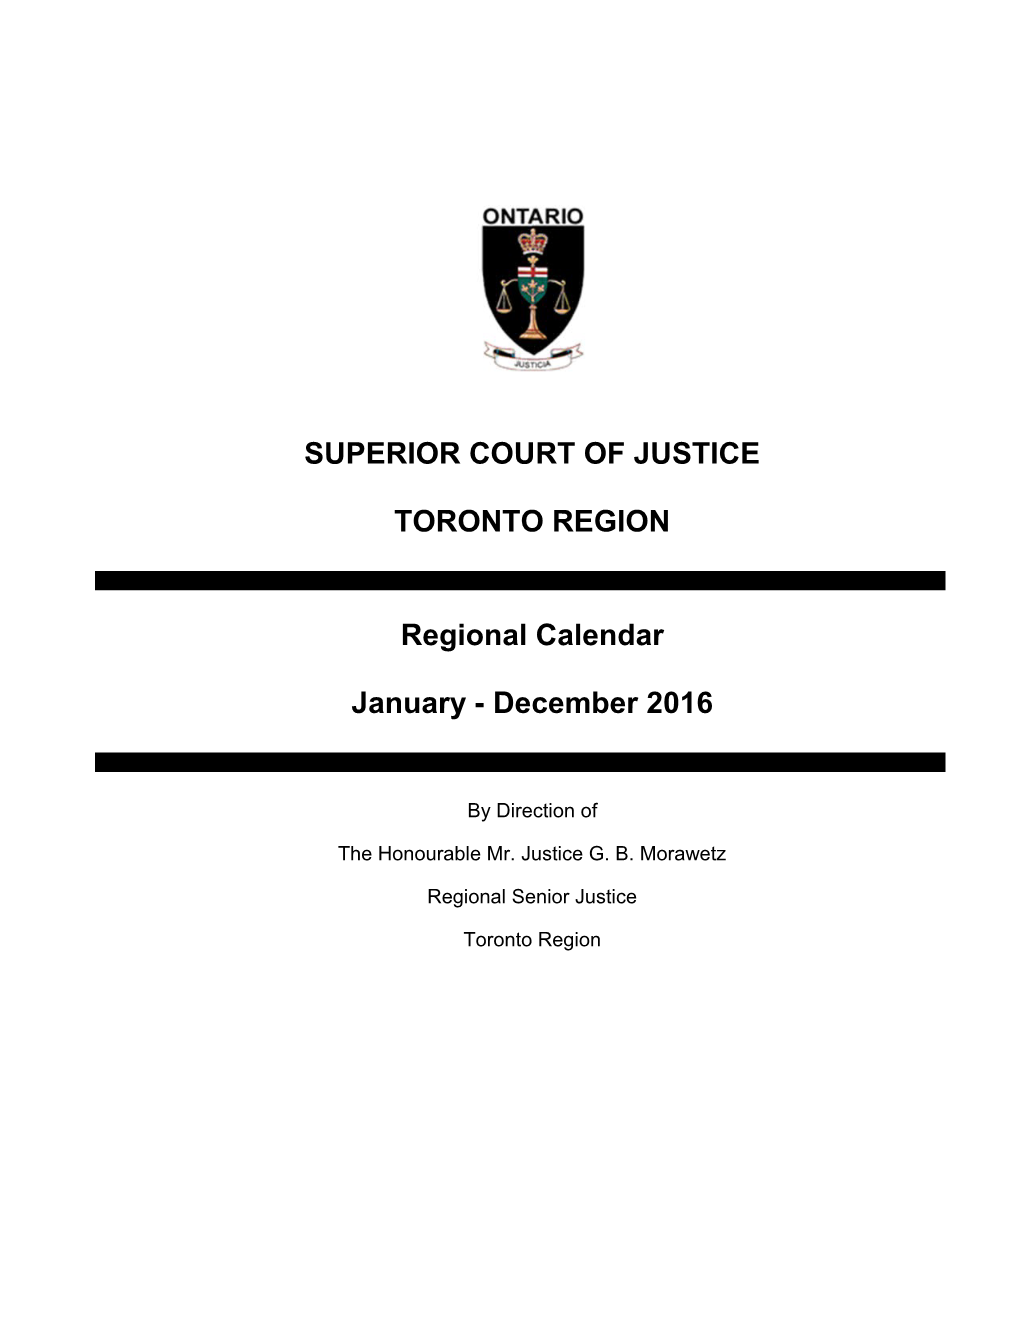 Toronto Regional Calendar January to December 2016